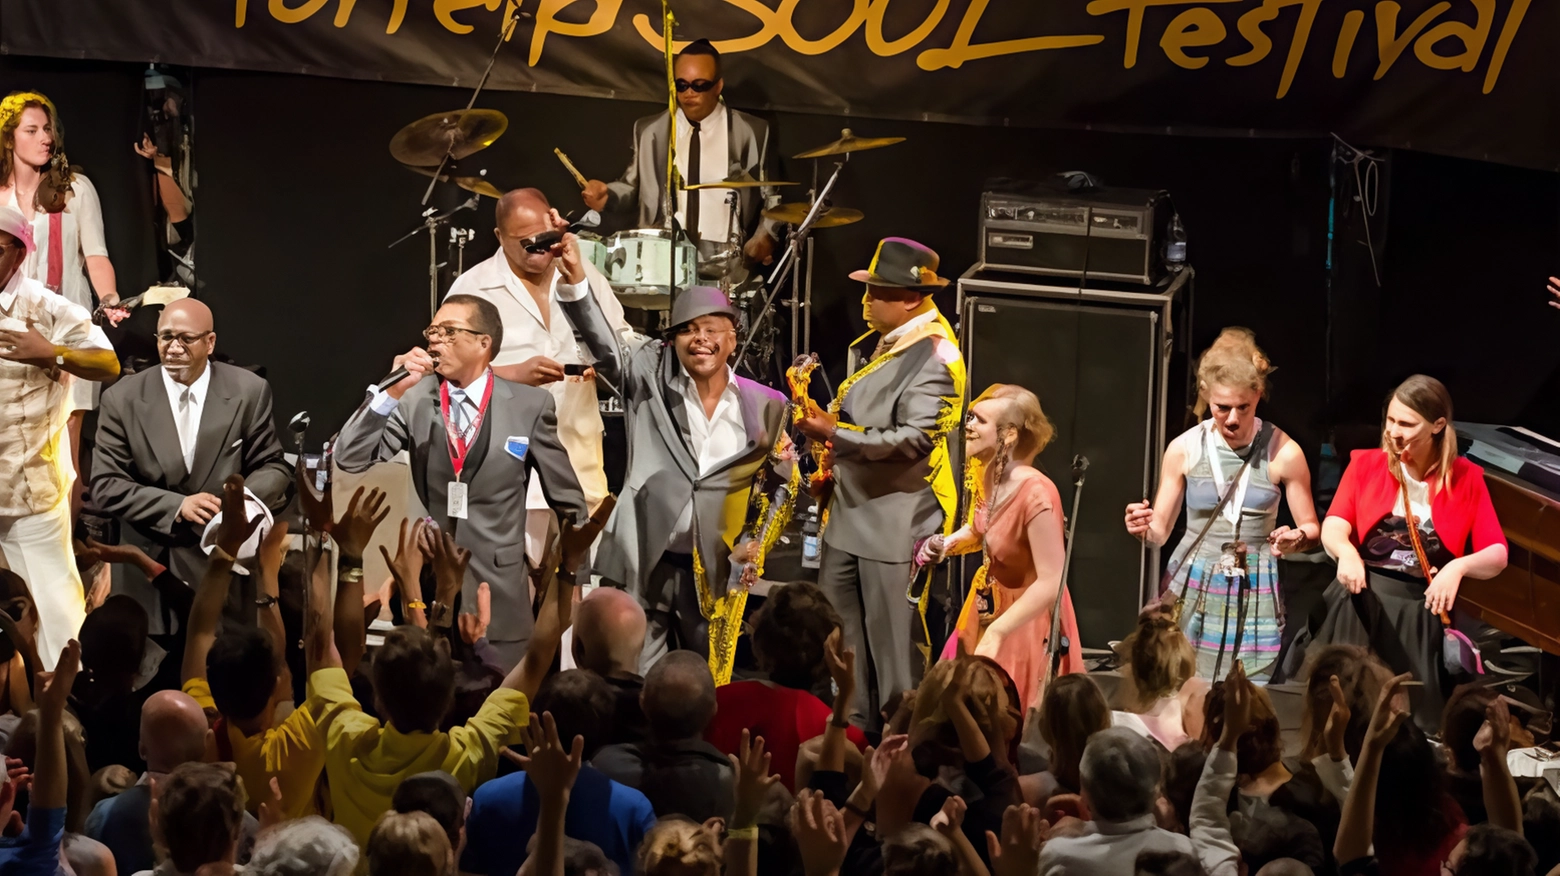 Il Porretta Soul Festival, evento annuale che celebra la musica soul americana, trasforma Porretta Terme in una succursale di Memphis. Artisti internazionali si esibiscono in un'atmosfera unica, attirando apprezzamento anche negli Stati Uniti.